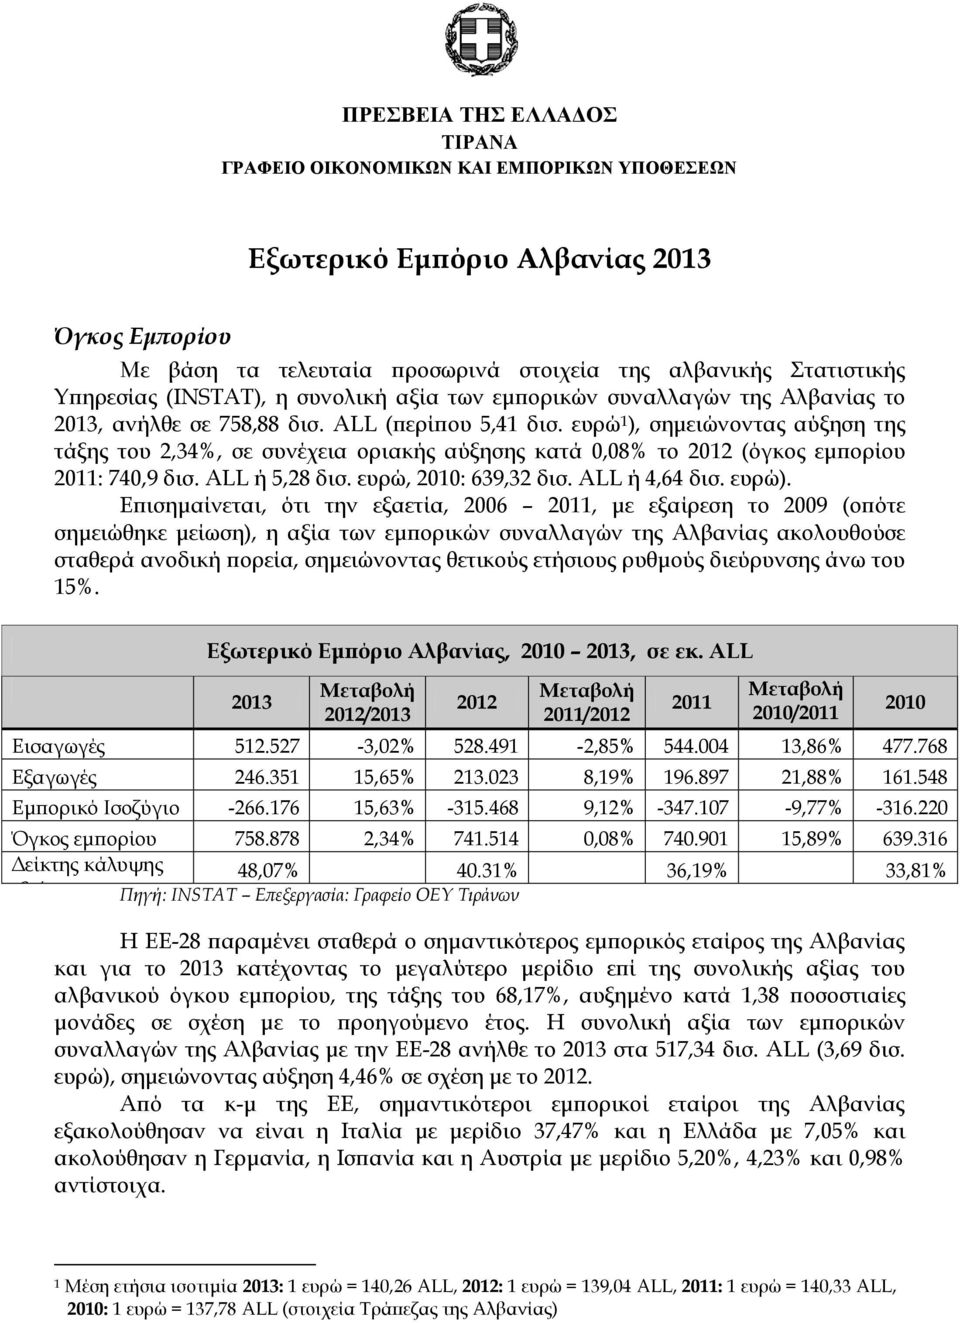 ευρώ 1 ), σημειώνοντας αύξηση της τάξης του 2,34%, σε συνέχεια οριακής αύξησης κατά 0,08% το (όγκος εμπορίου 2011: 740,9 δισ. ALL ή 5,28 δισ. ευρώ, 2010: 639,32 δισ. ALL ή 4,64 δισ. ευρώ).